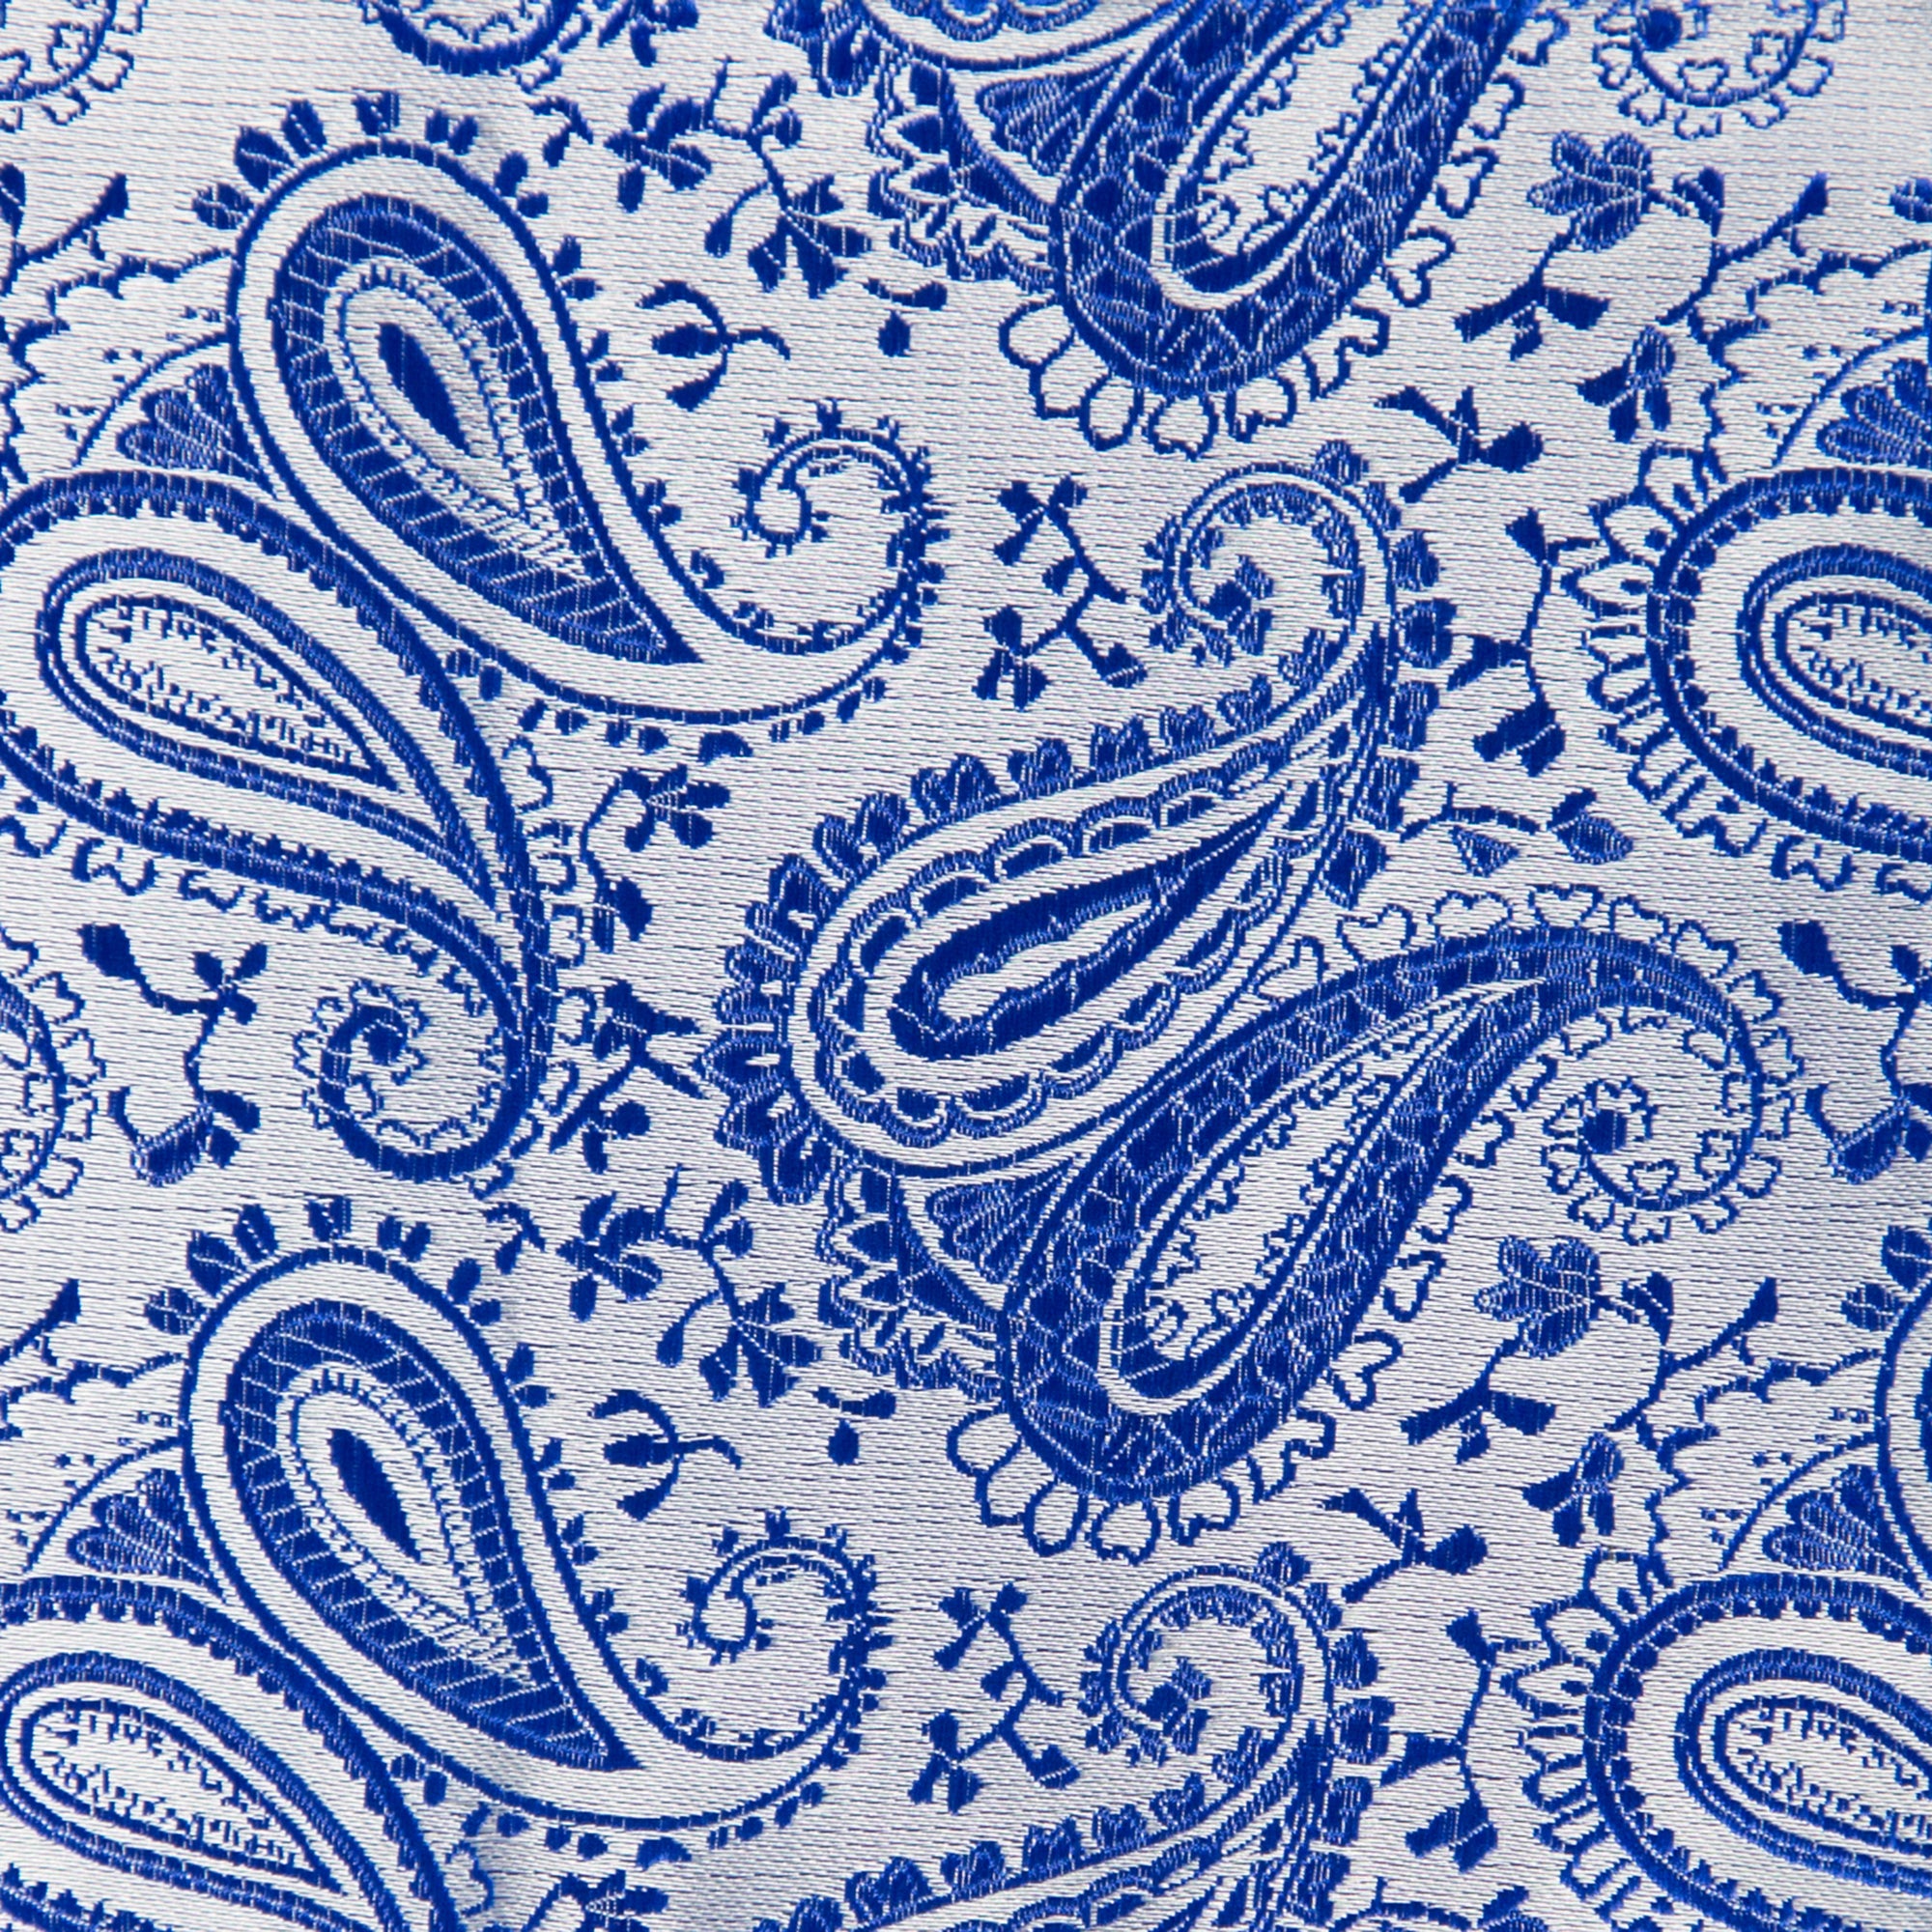 Silber-Blaue - Kaufen GASSANI Sie GASSANIshop.de Krawatten | Paisley-Krawatte für designt